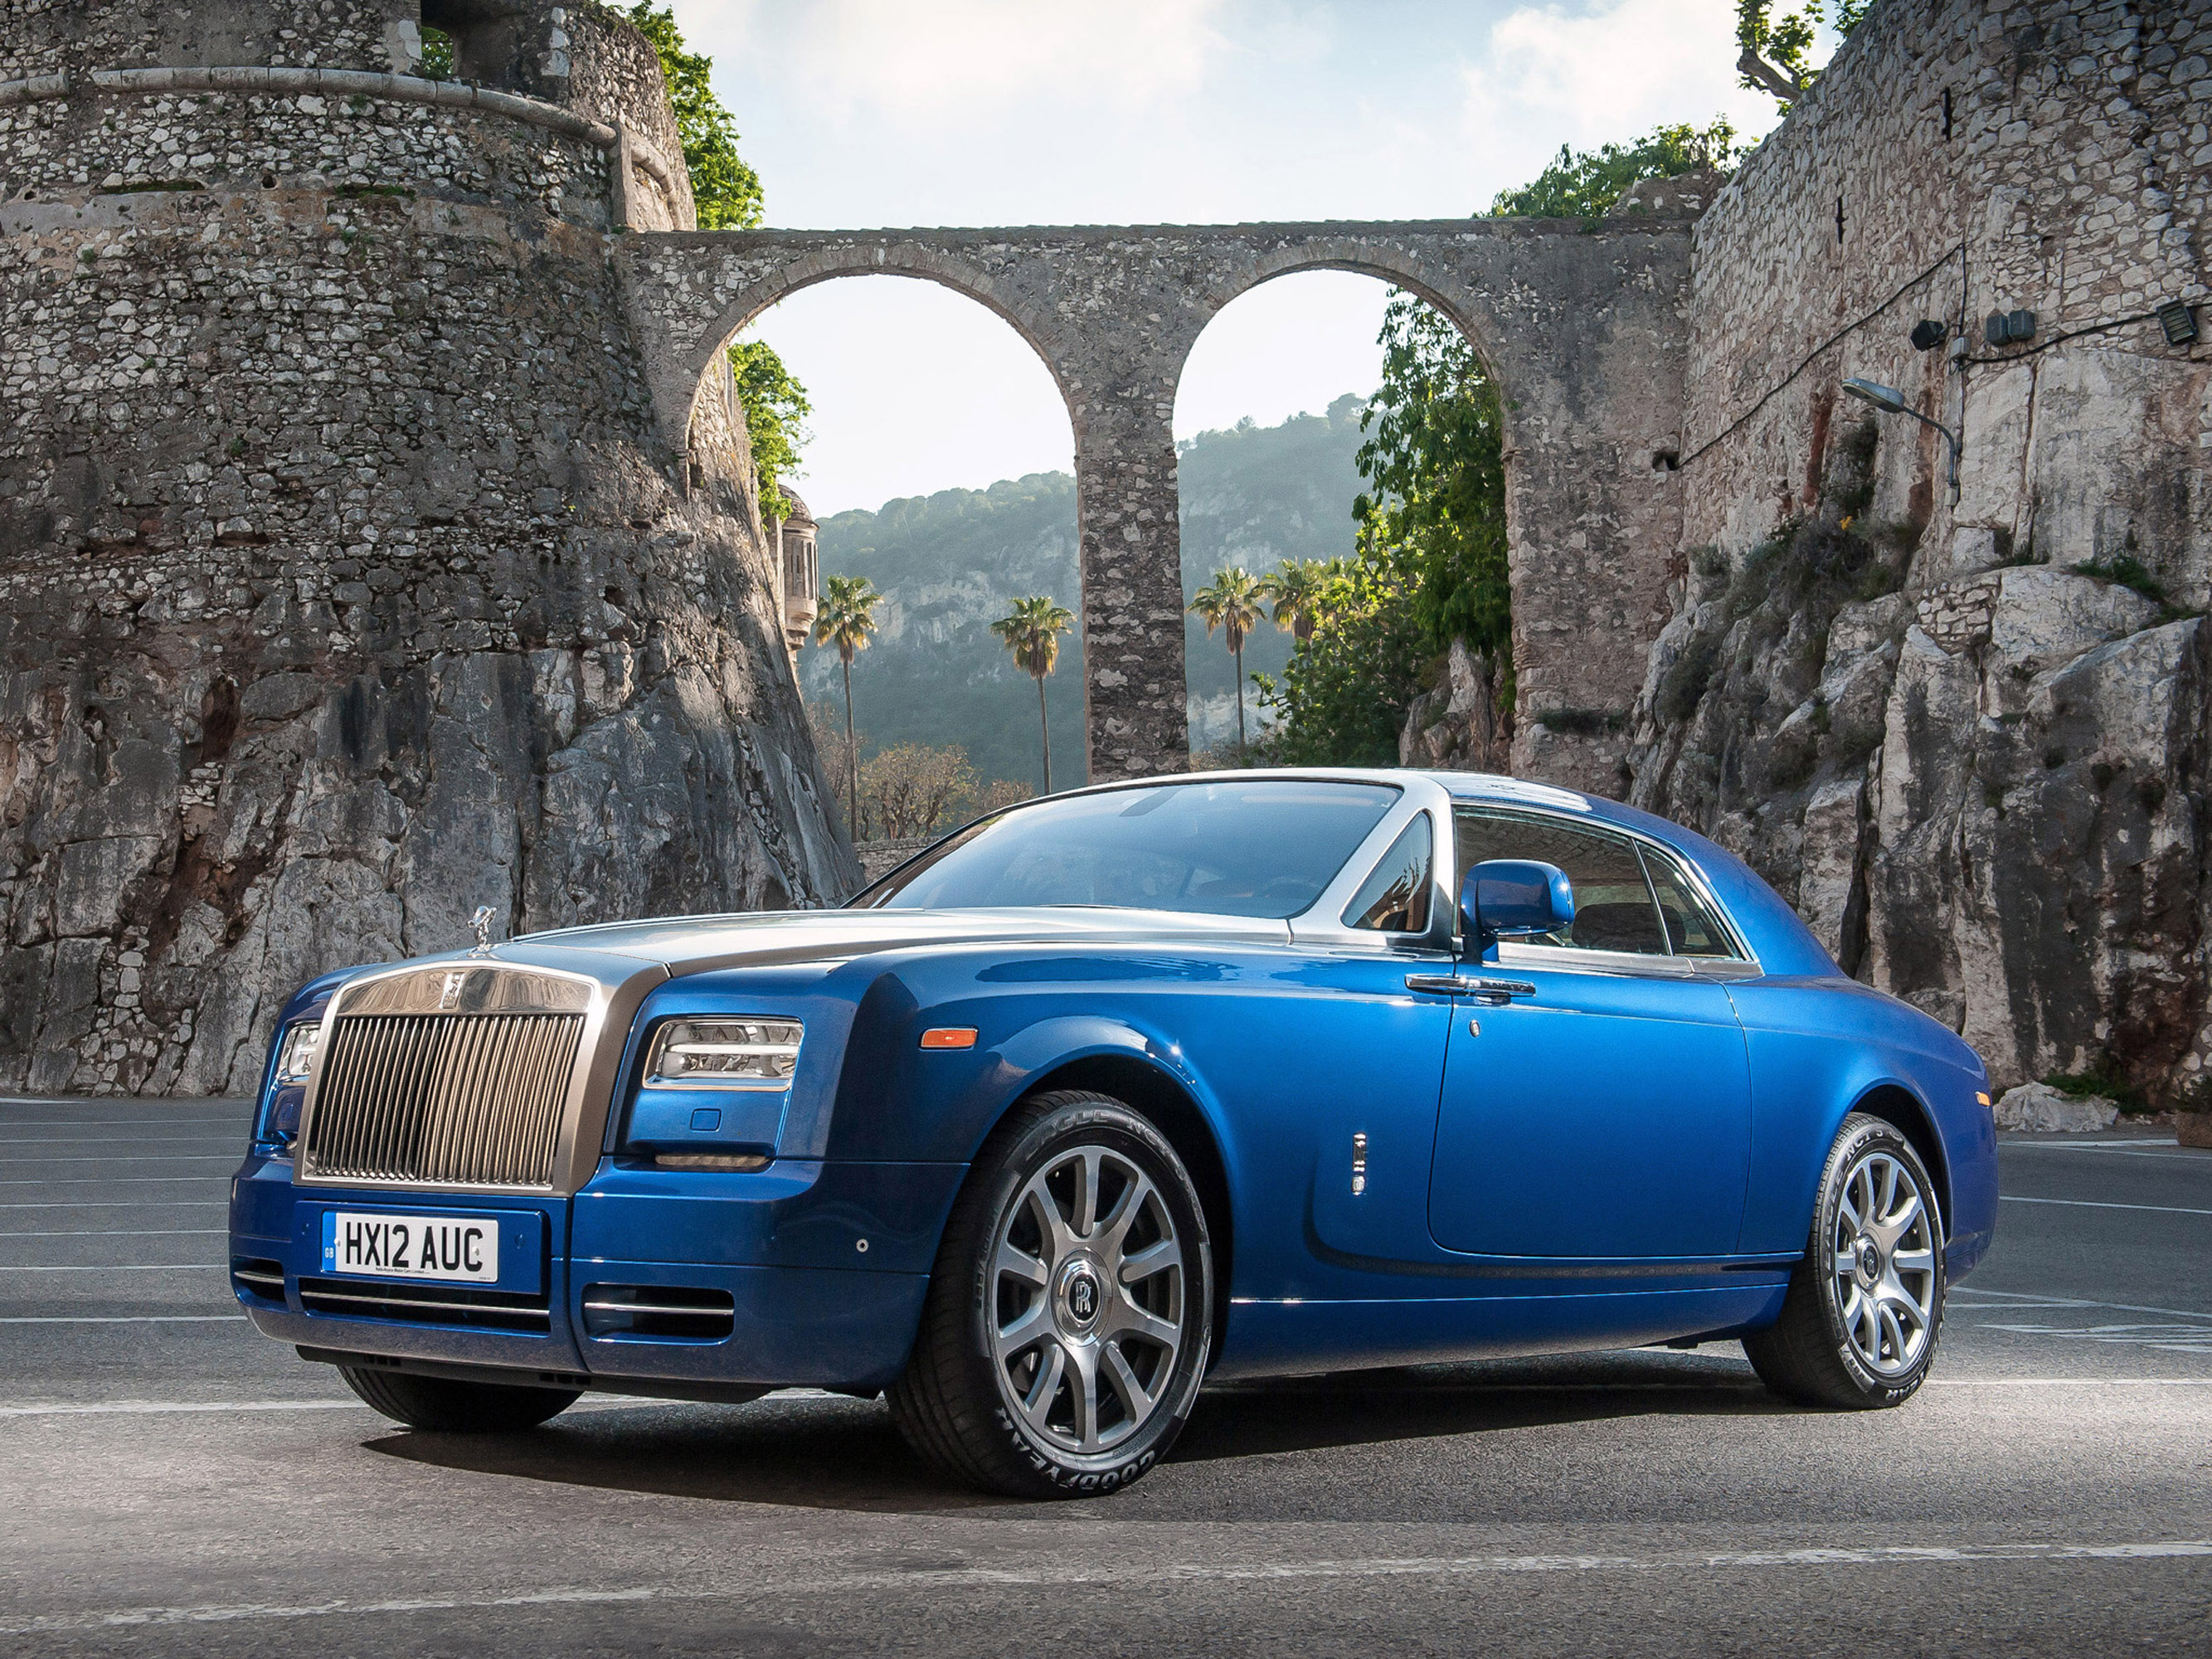 Крутой rolls royce. Машина Rolls Royce Phantom. Роллс Ройс купе. Rolls Royce Phantom Coupe 2012. Rolls Royce Phantom купе.